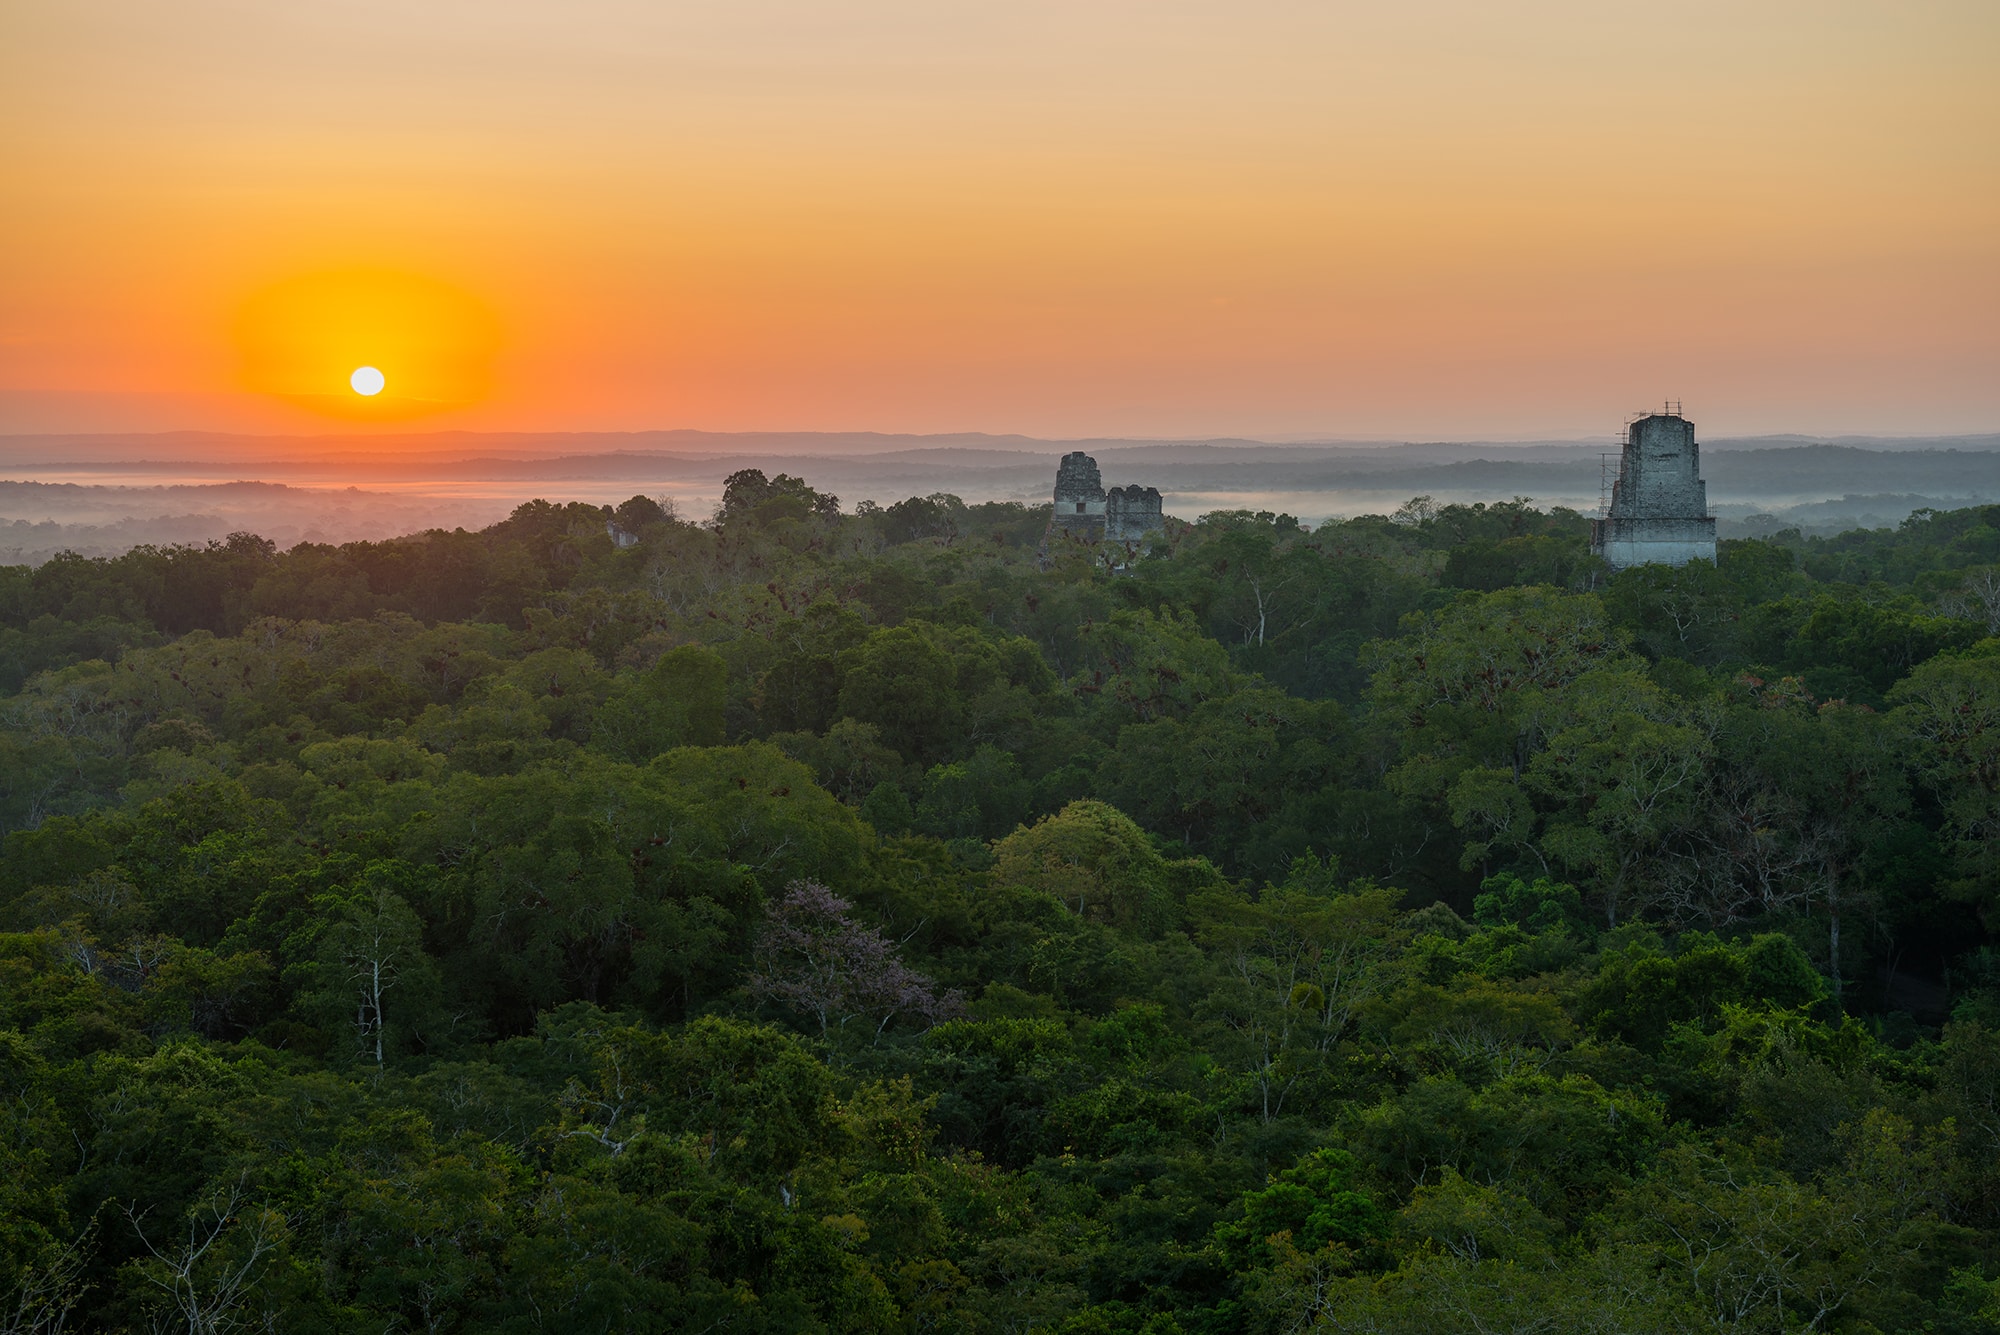 Star Wars Filming Locations: Tikal, Guatemala